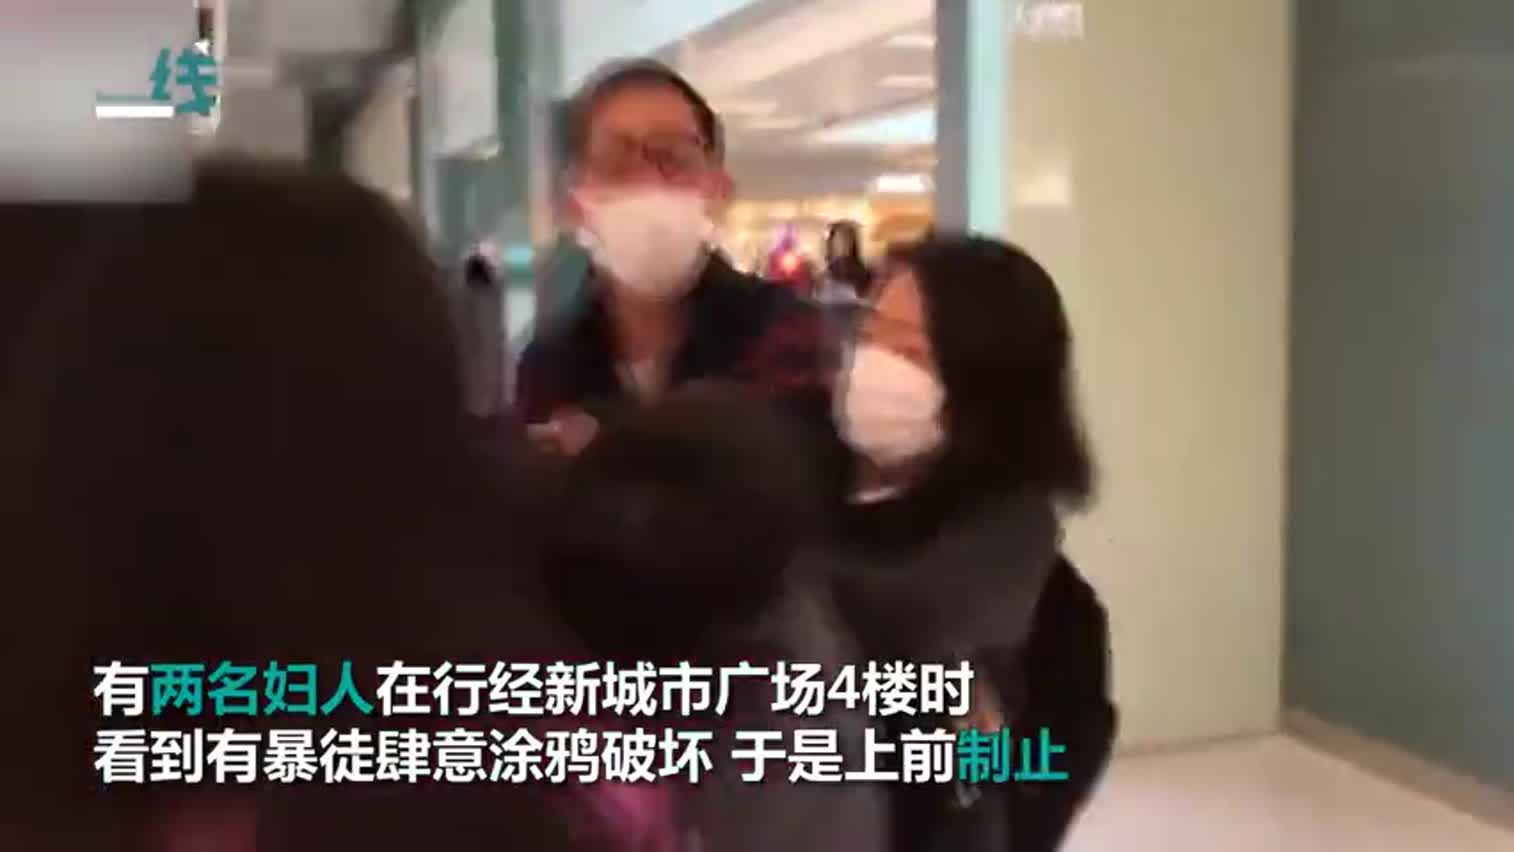 视频：暴徒肆意涂鸦破坏 女子勇敢制止遭群殴脸部喷